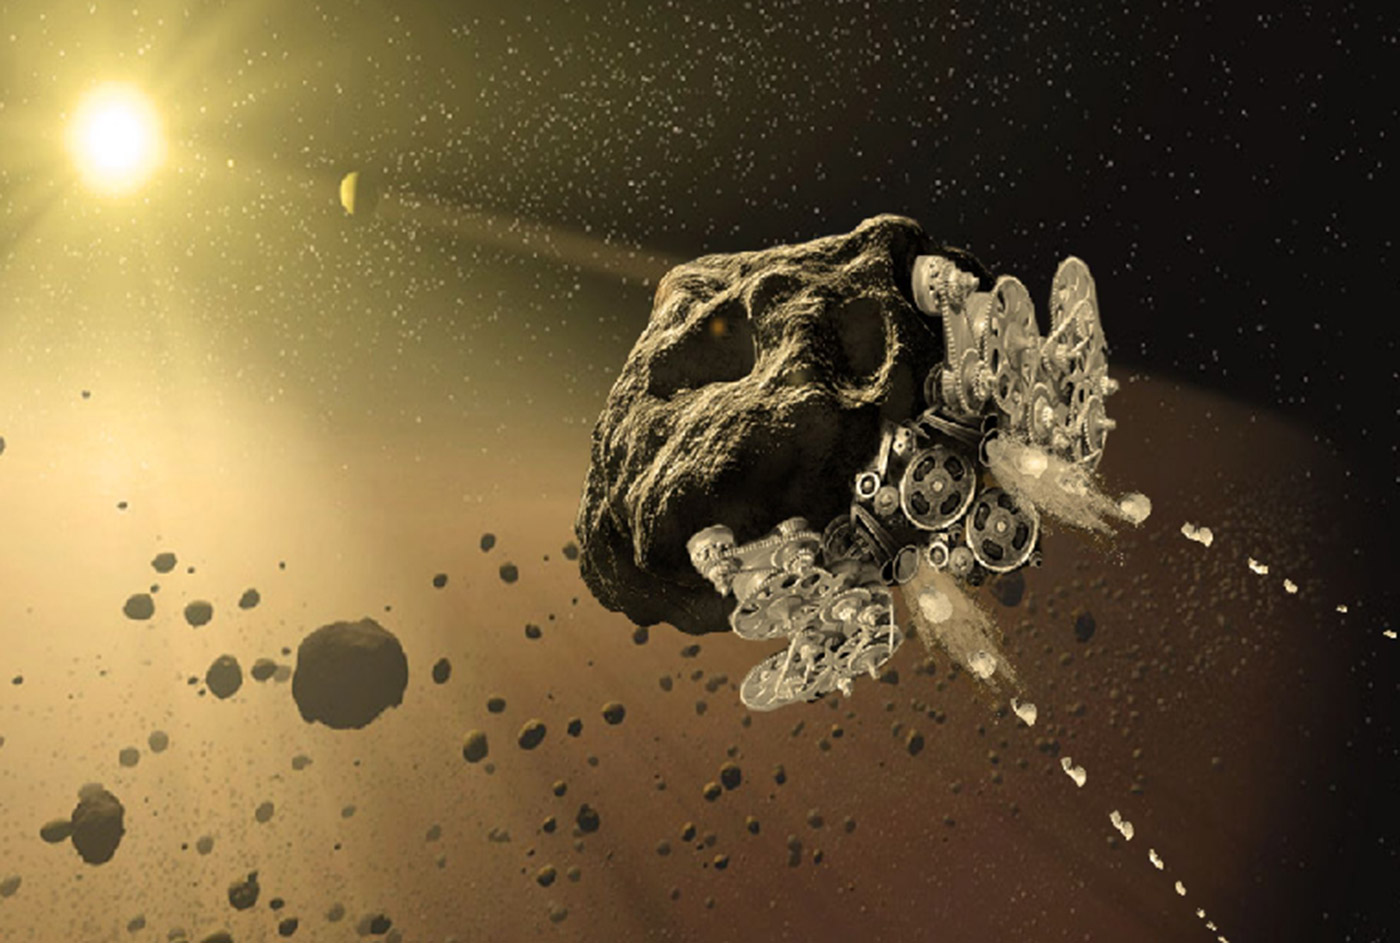 asteroid-spacecraft.jpg